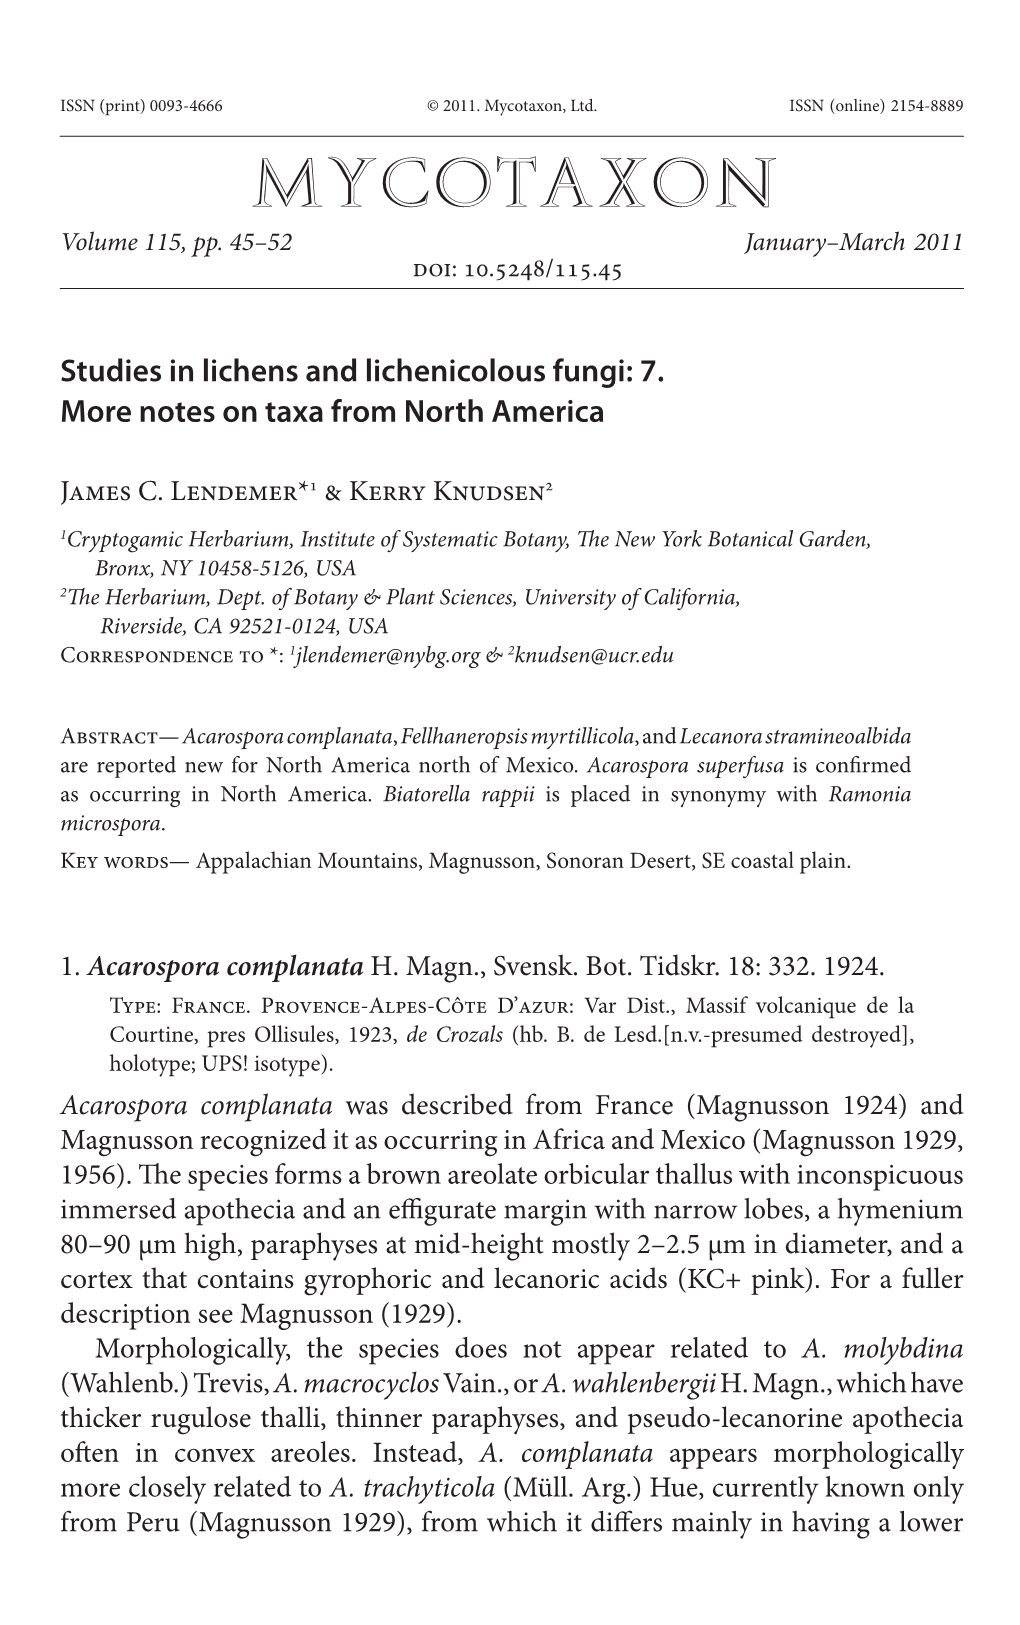 Studies in Lichens and Lichenicolous Fungi: 7